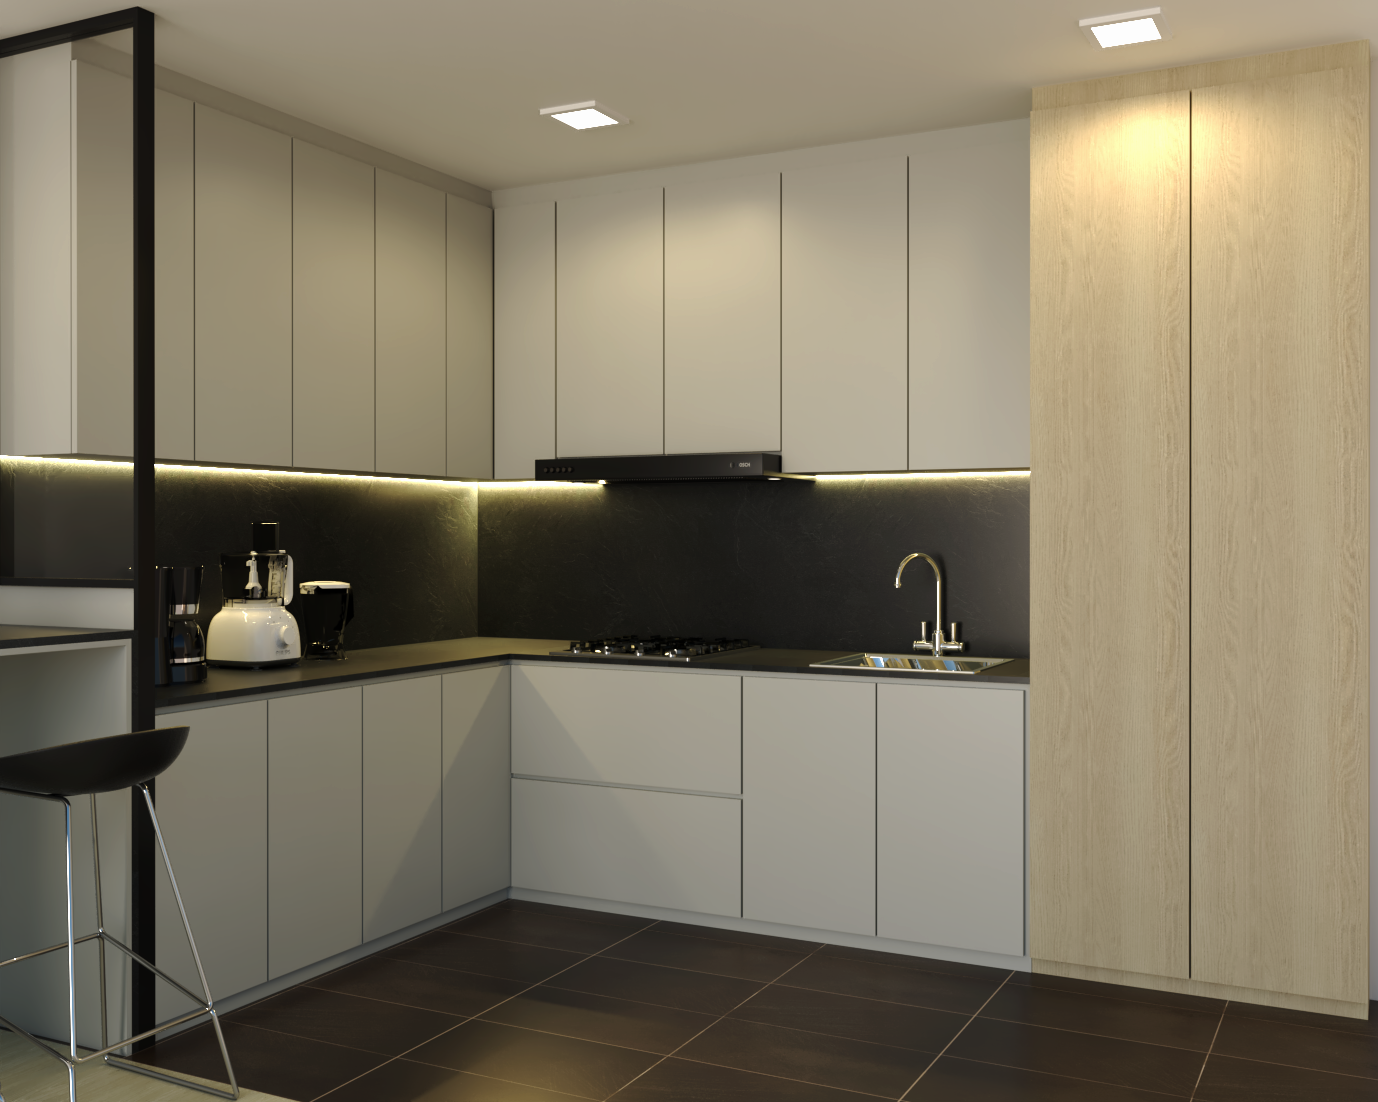 White And Black Contemporary Kitchen Cabinet Design